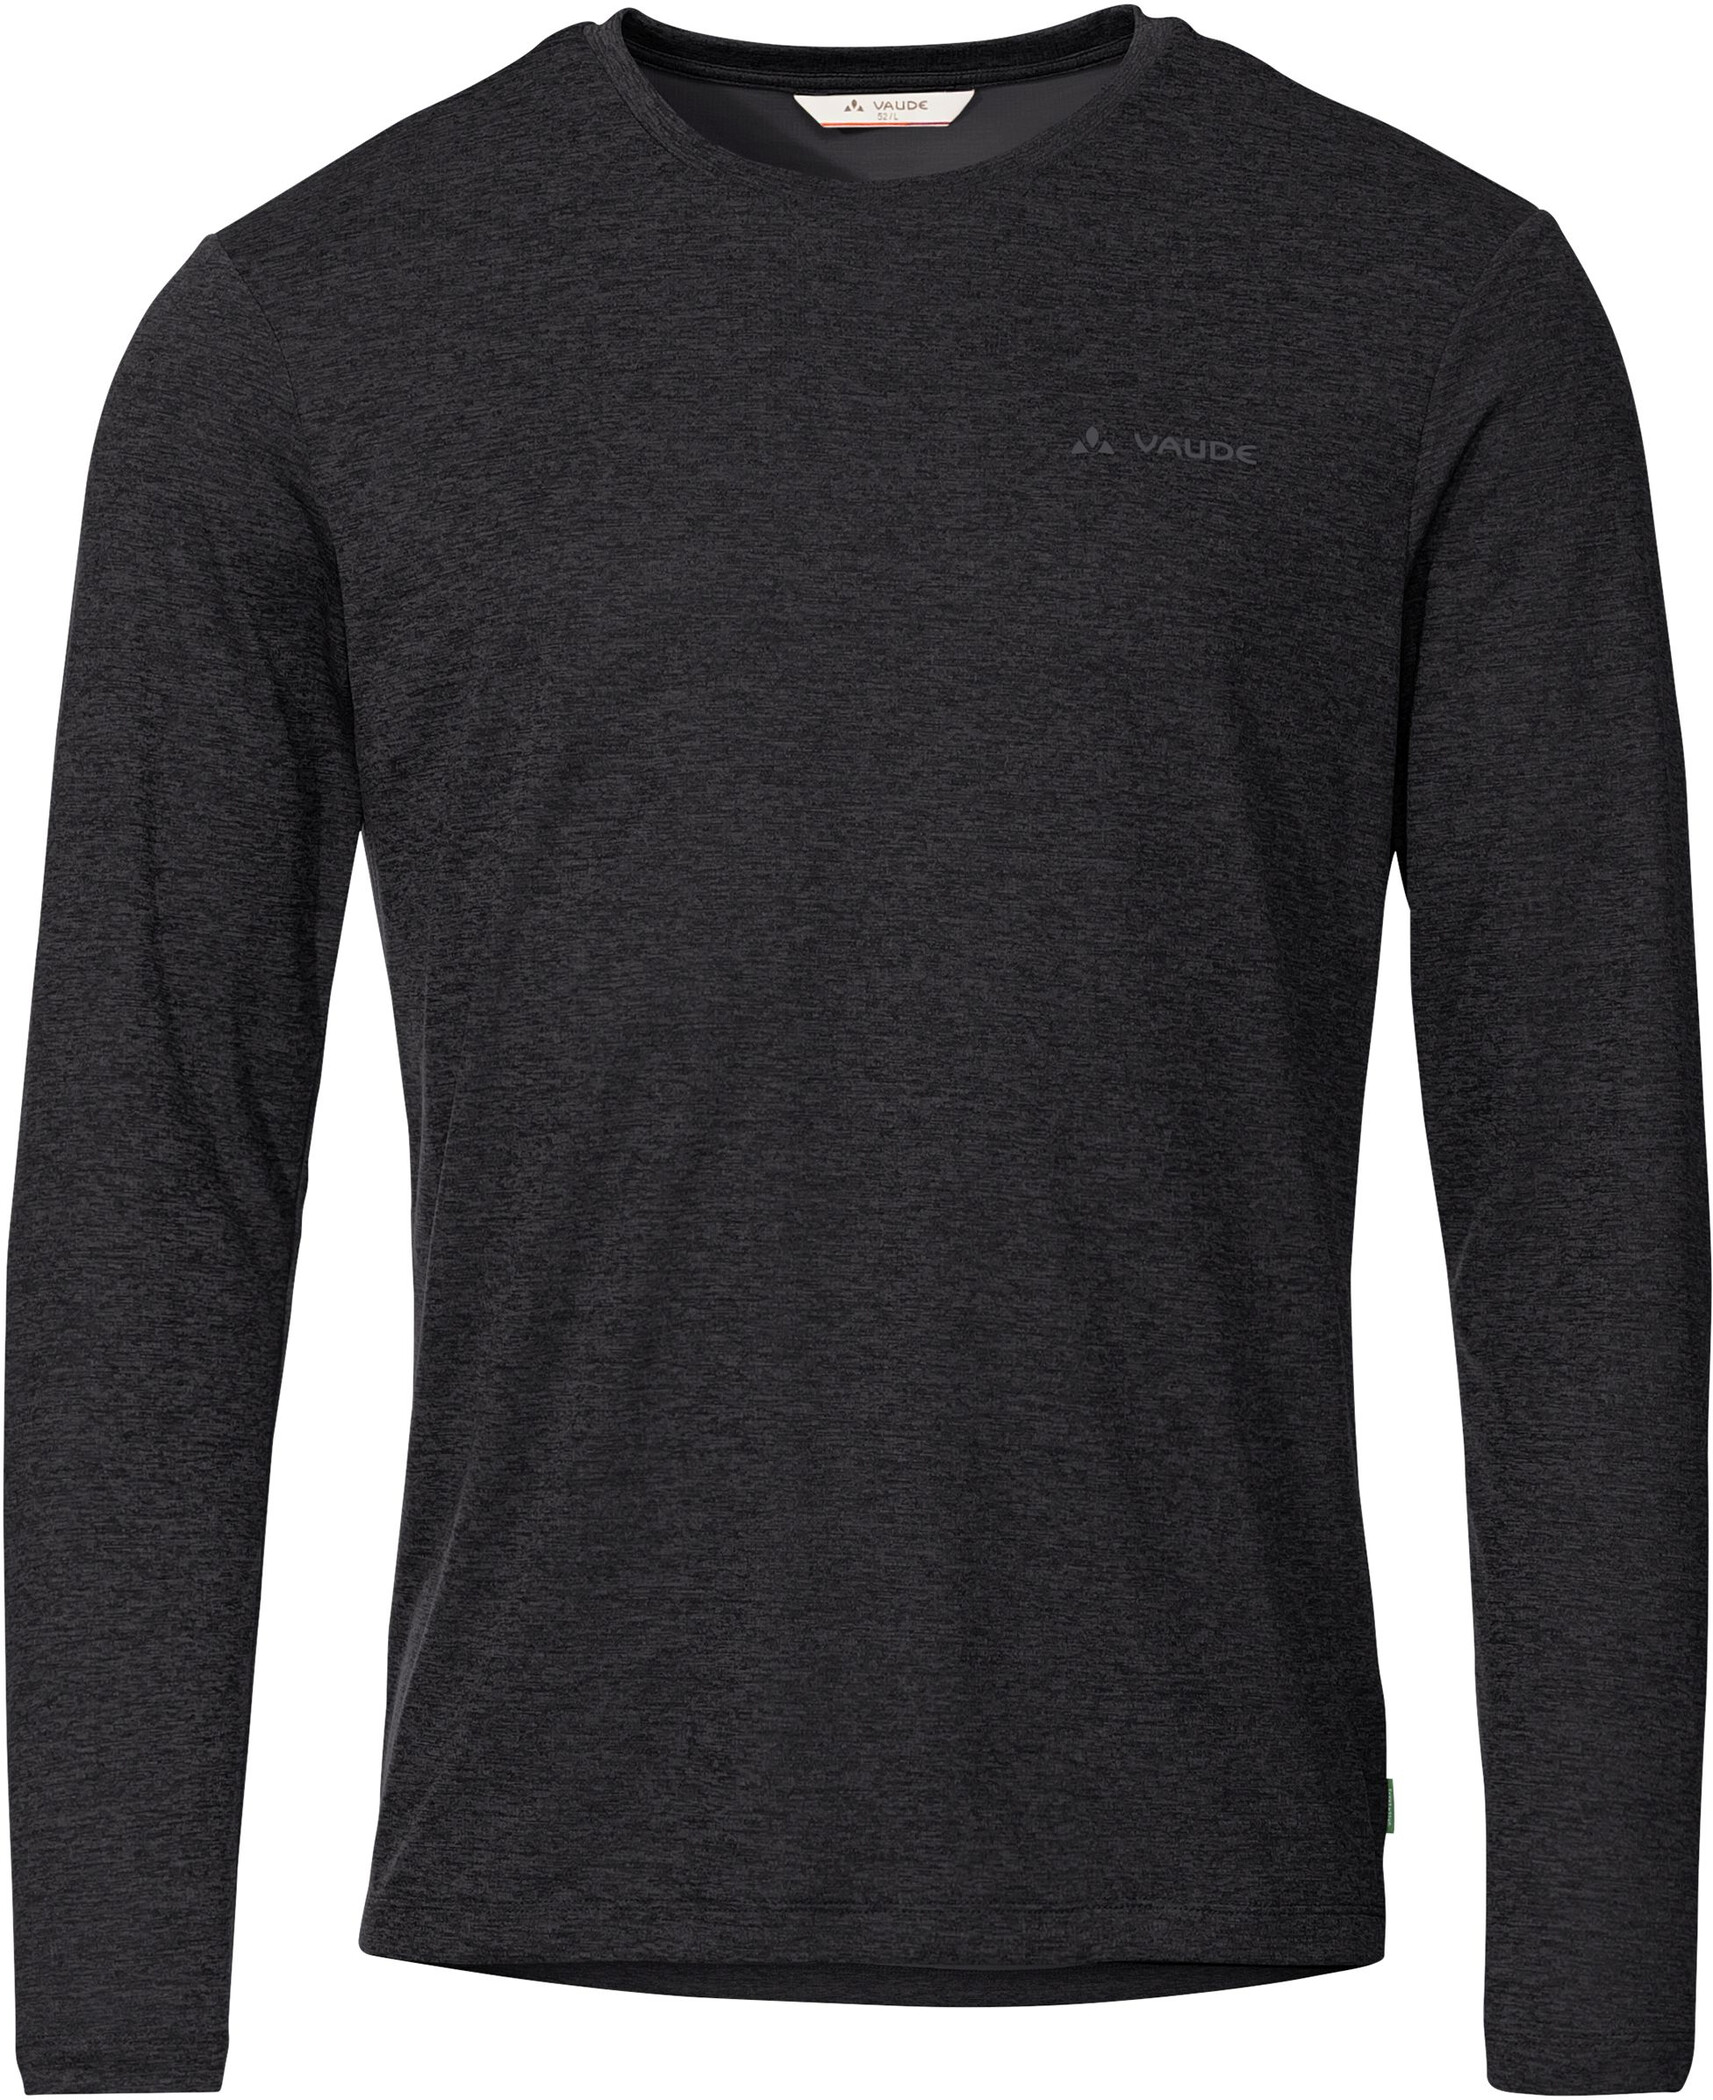 VAUDE Essential Langarm T-Shirt Herren schwarz